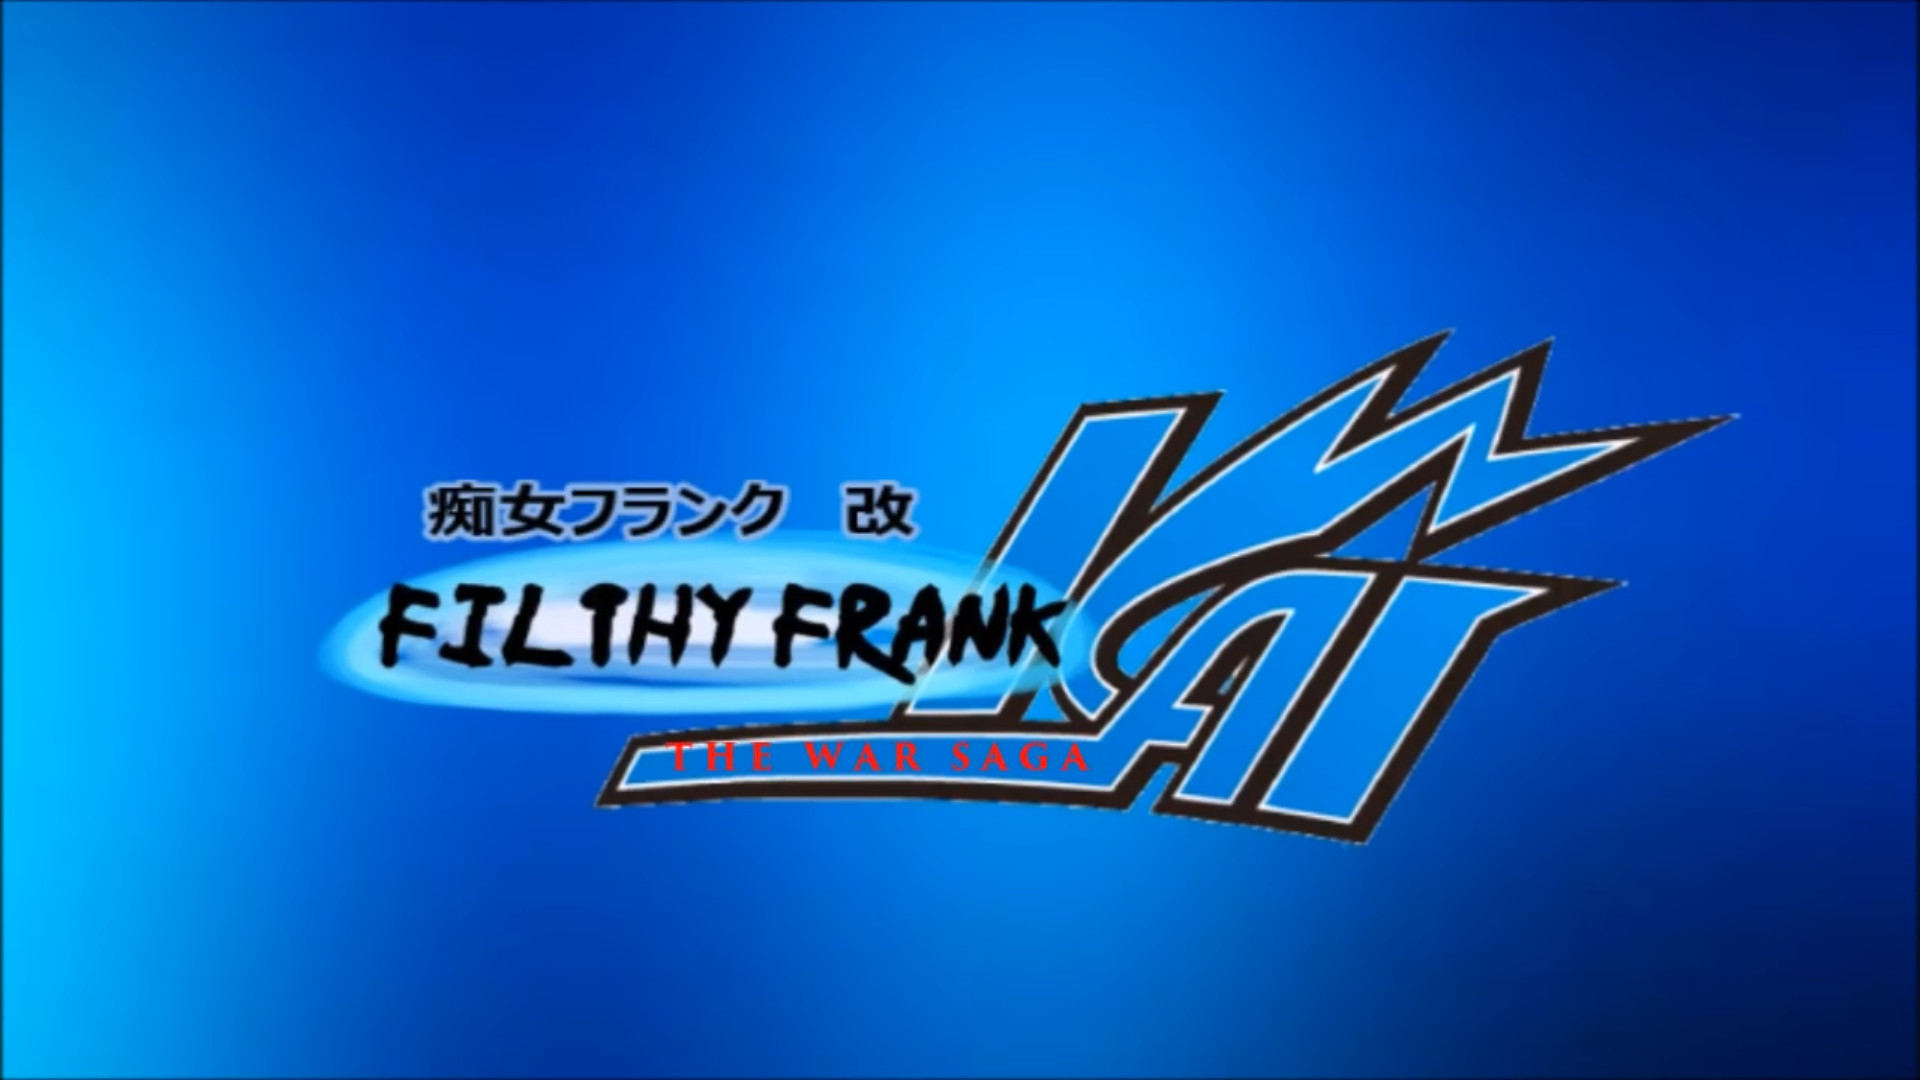 FilthyFrank Anime: War Saga Opening [Super Smash Bros. (Wii U)] [Mods]